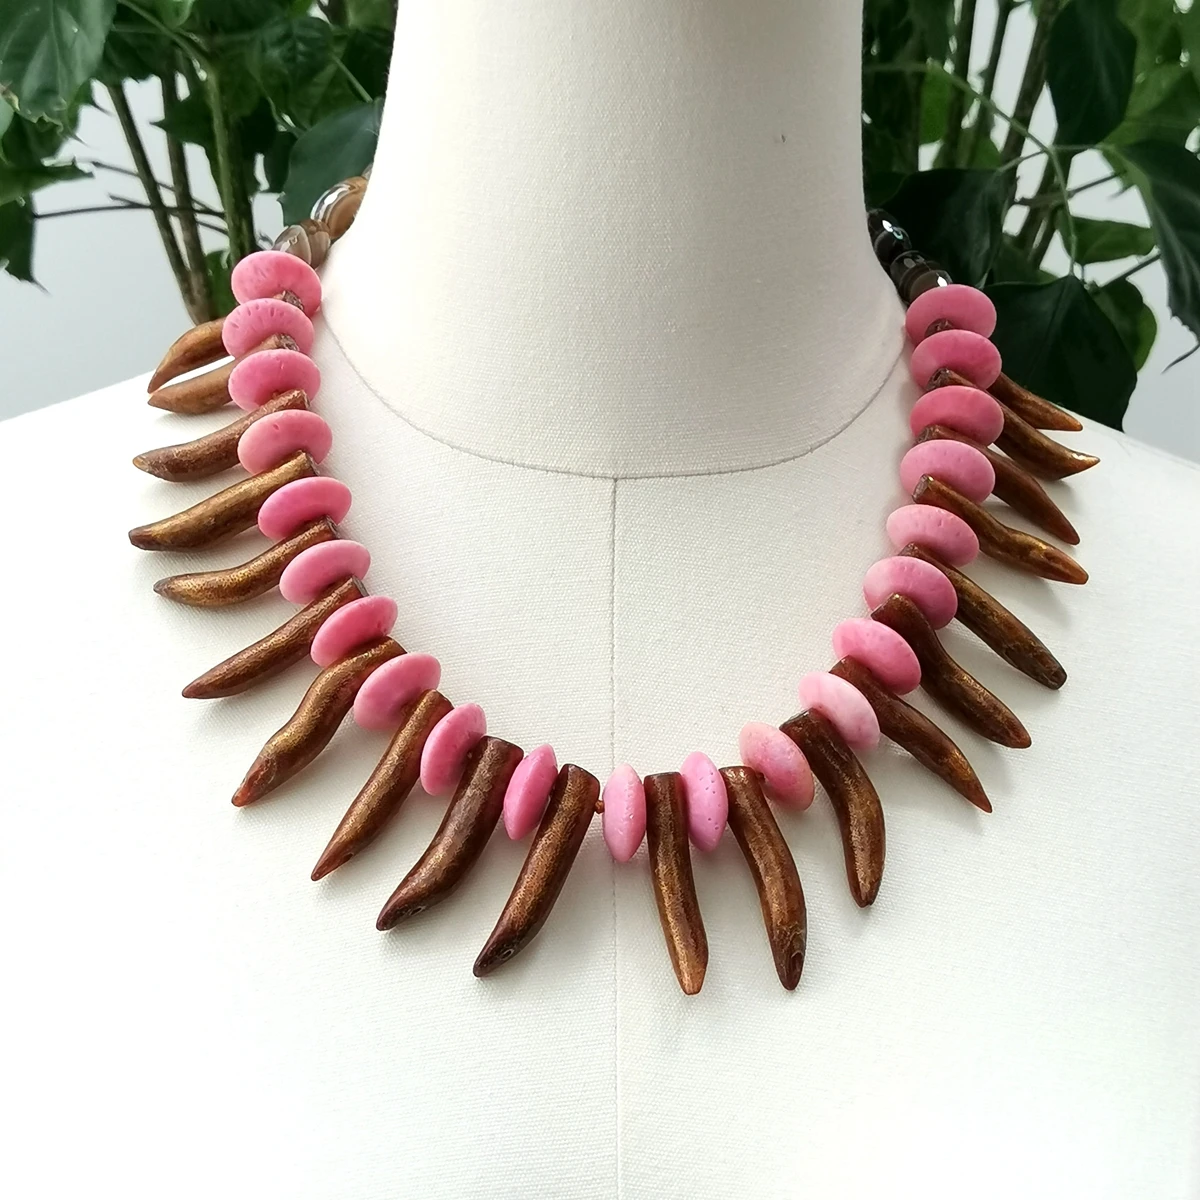 

Lii Ji натуральный камень коричневый розовый чокер ожерелье 54 см коралловое ожерелье в наличии Распродажа женщин ювелирные изделия подарок